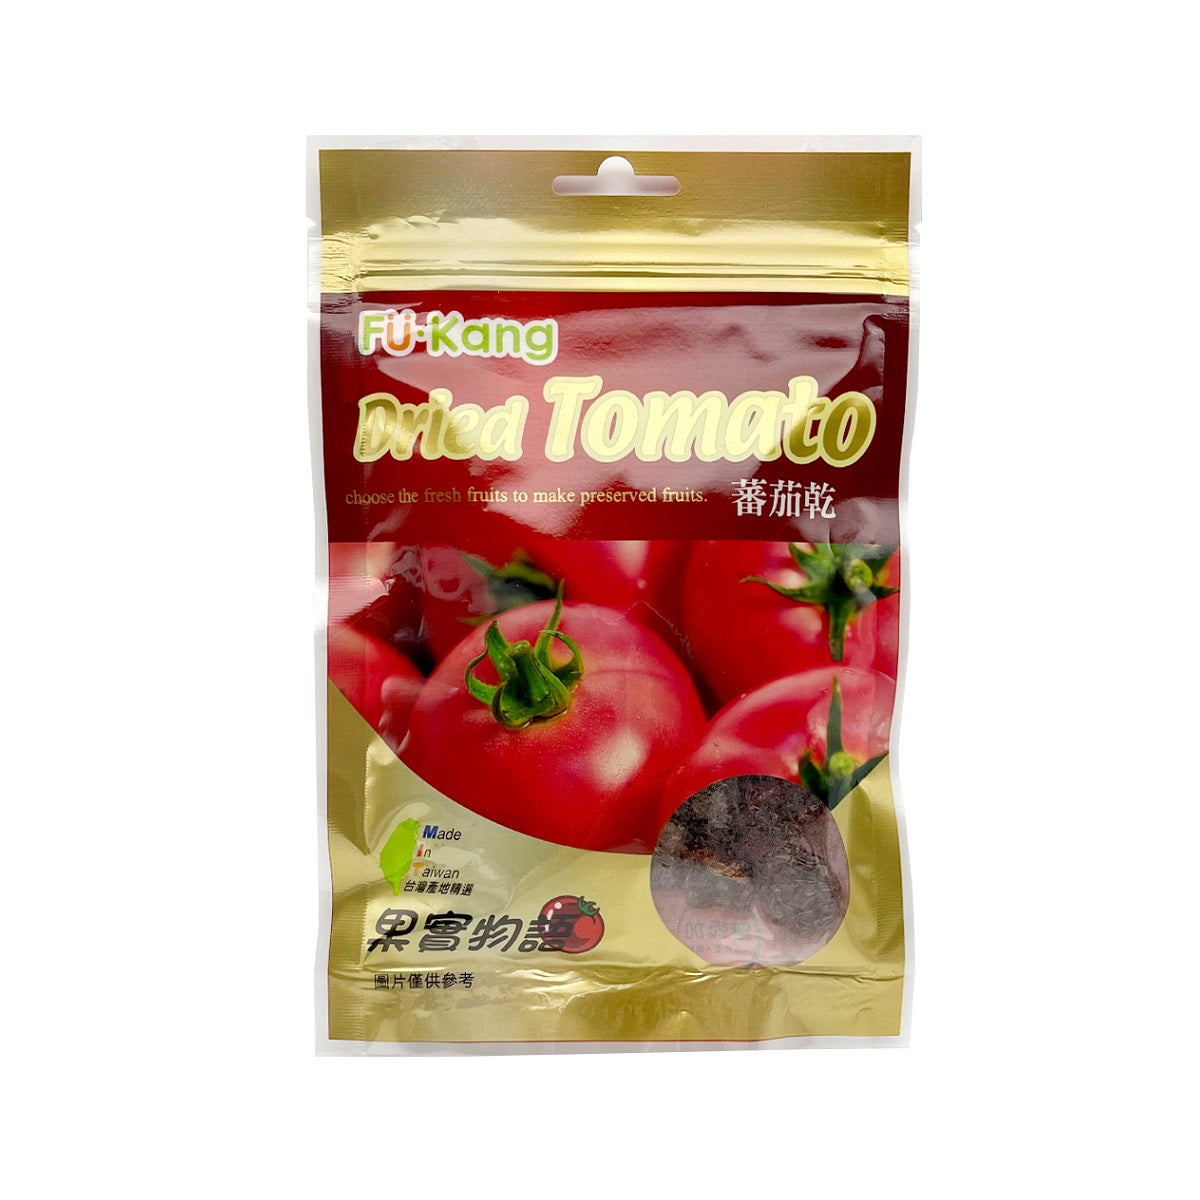 【FUKANG】 Dried Tomato 80g